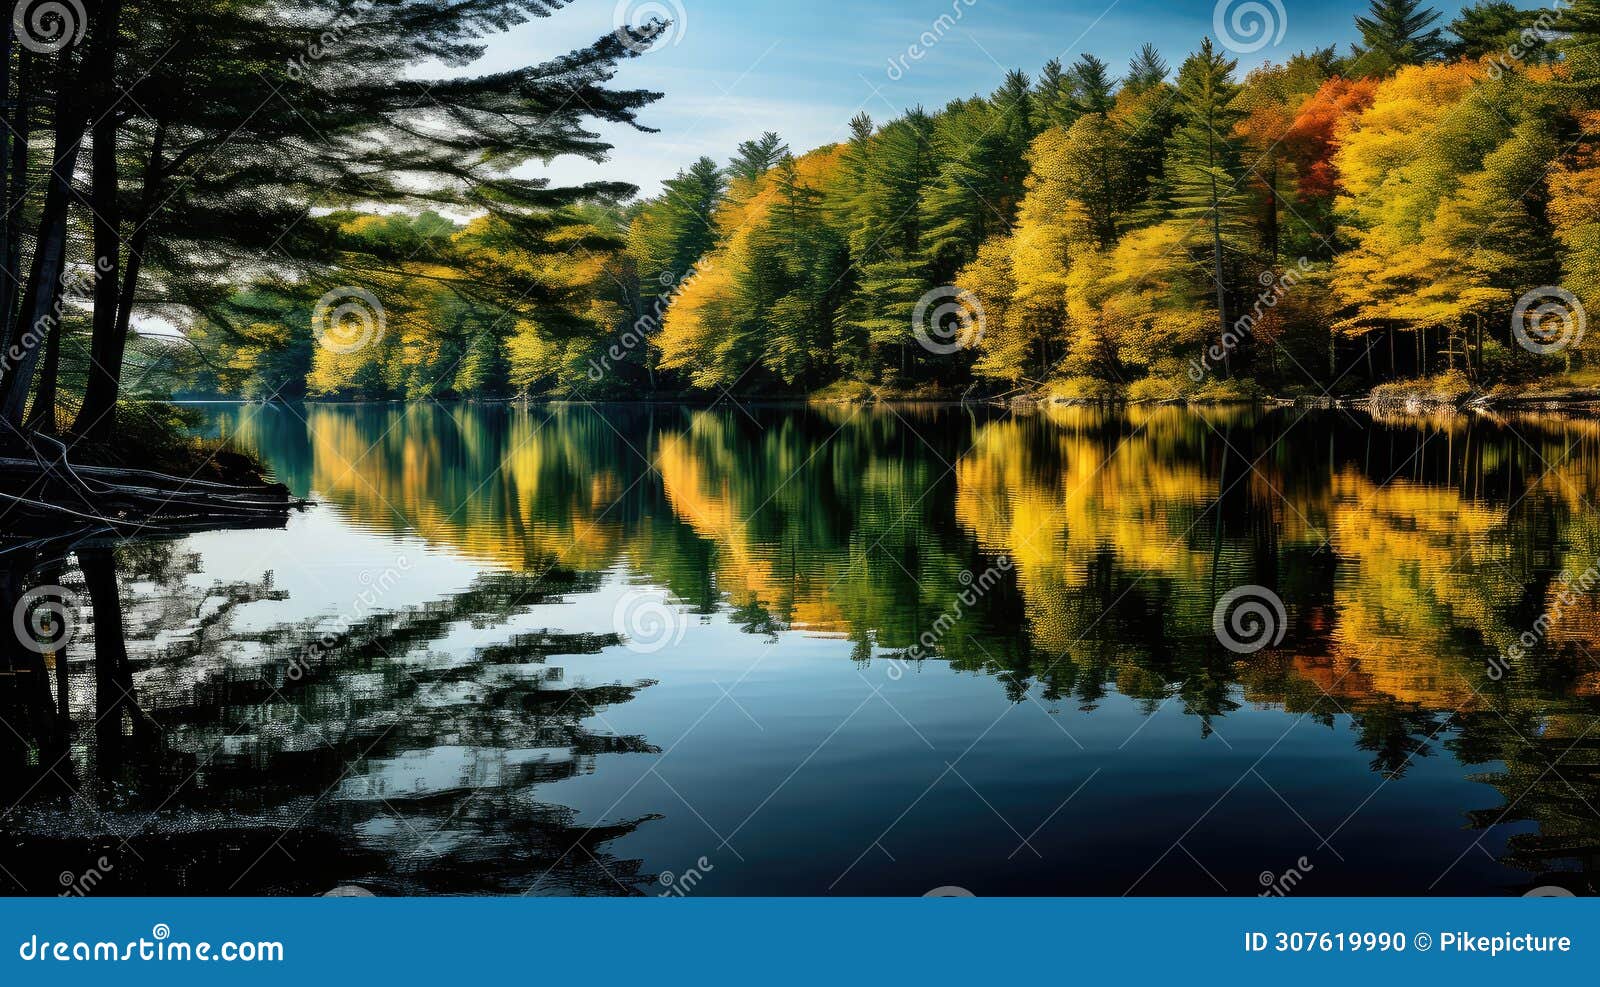 serene lake wonderful landscap